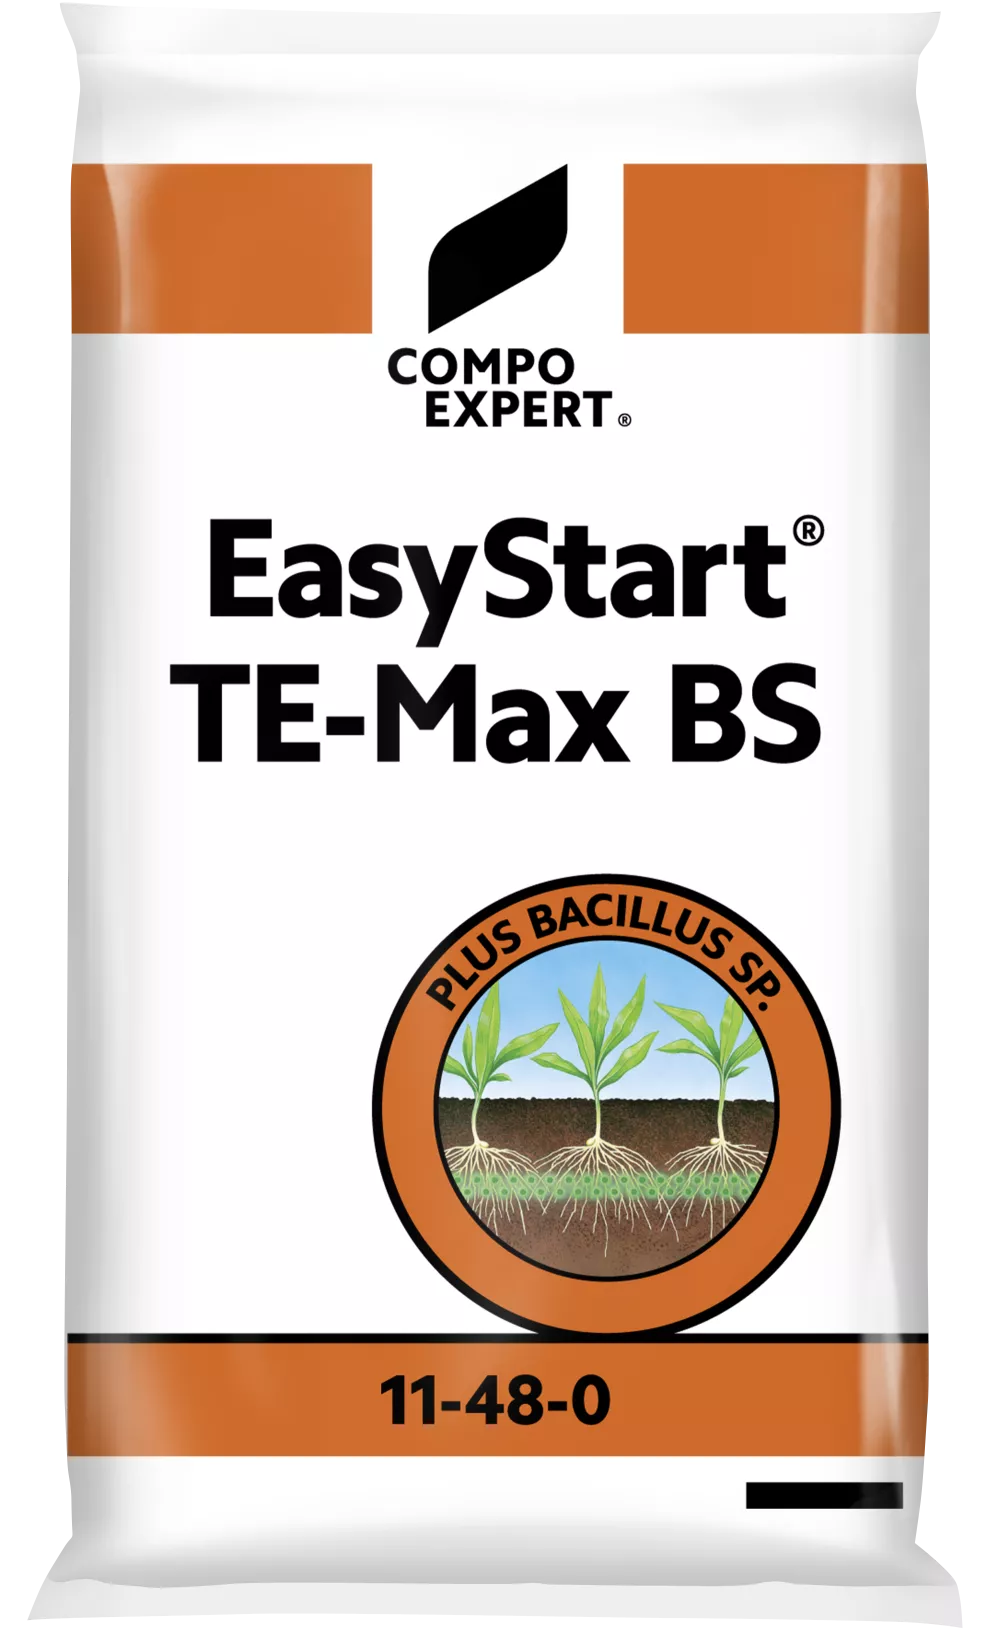 3D EasyStart TE-Max BS